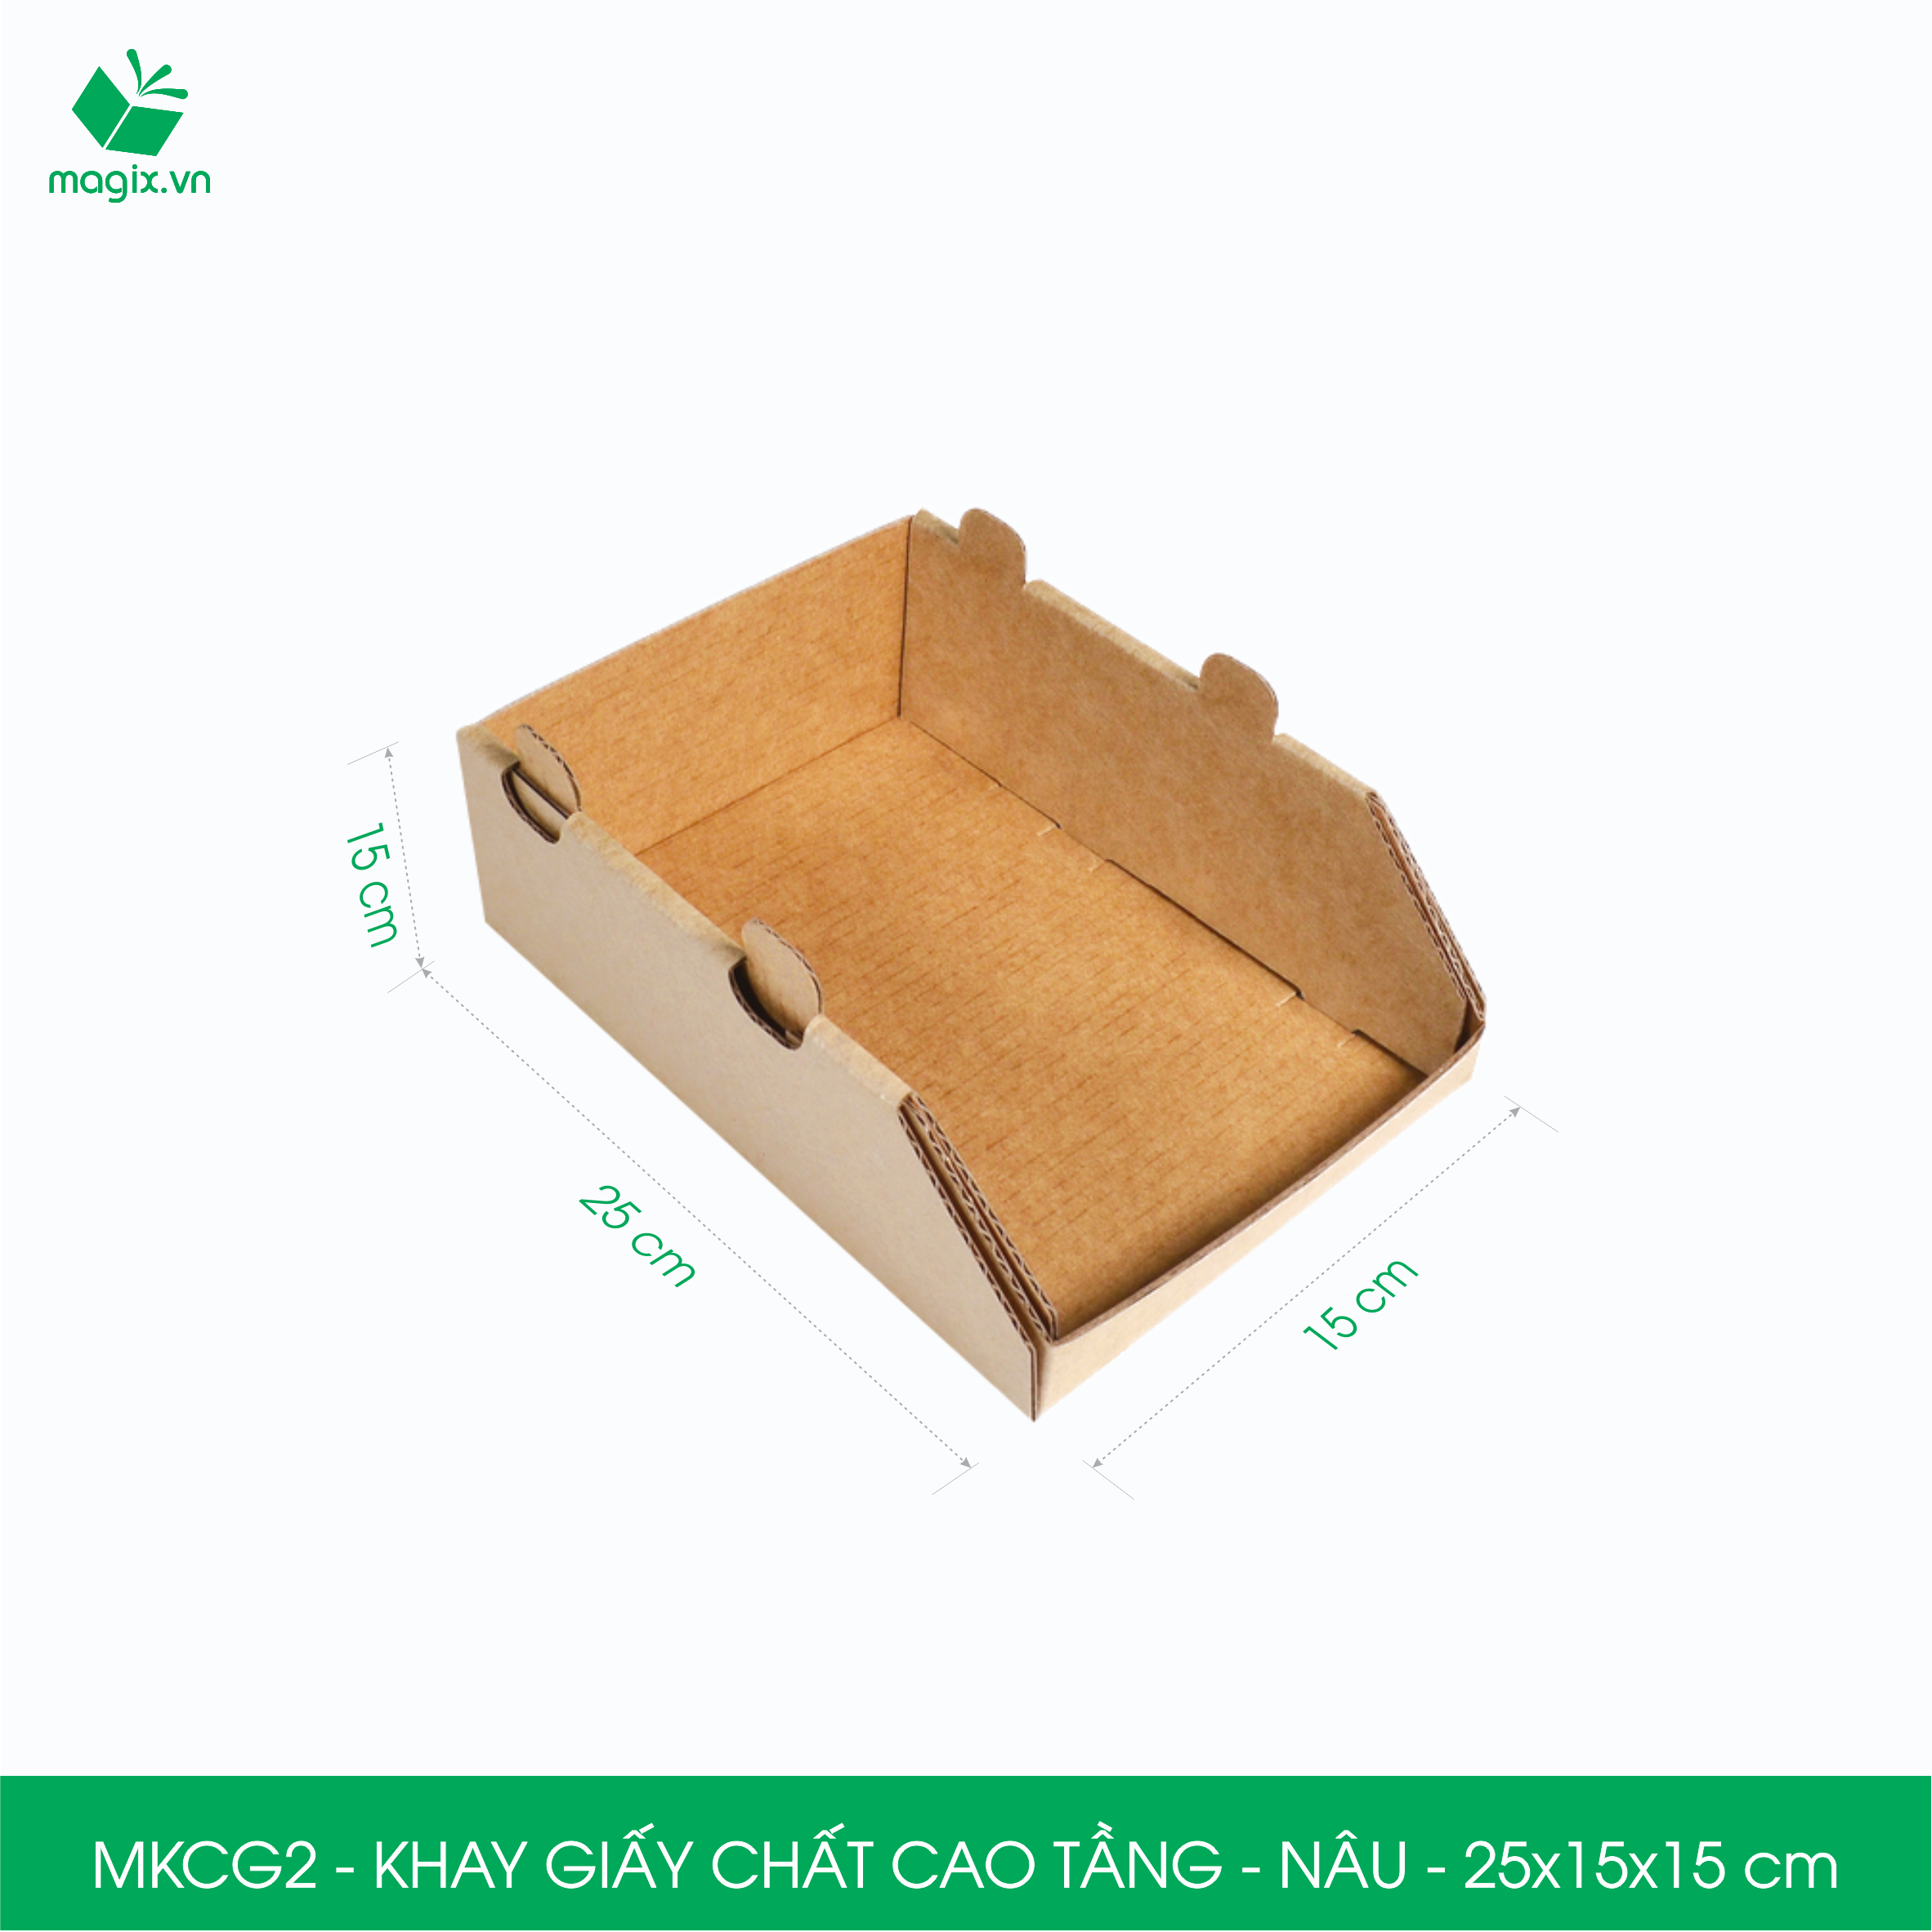 MKCG2 - 25x15x15 cm - 20 Khay giấy chất cao tầng bằng giấy carton siêu cứng, kệ giấy đựng đồ văn phòng, khay đựng dụng cụ, khay linh kiện, kệ phân loại dụng cụ